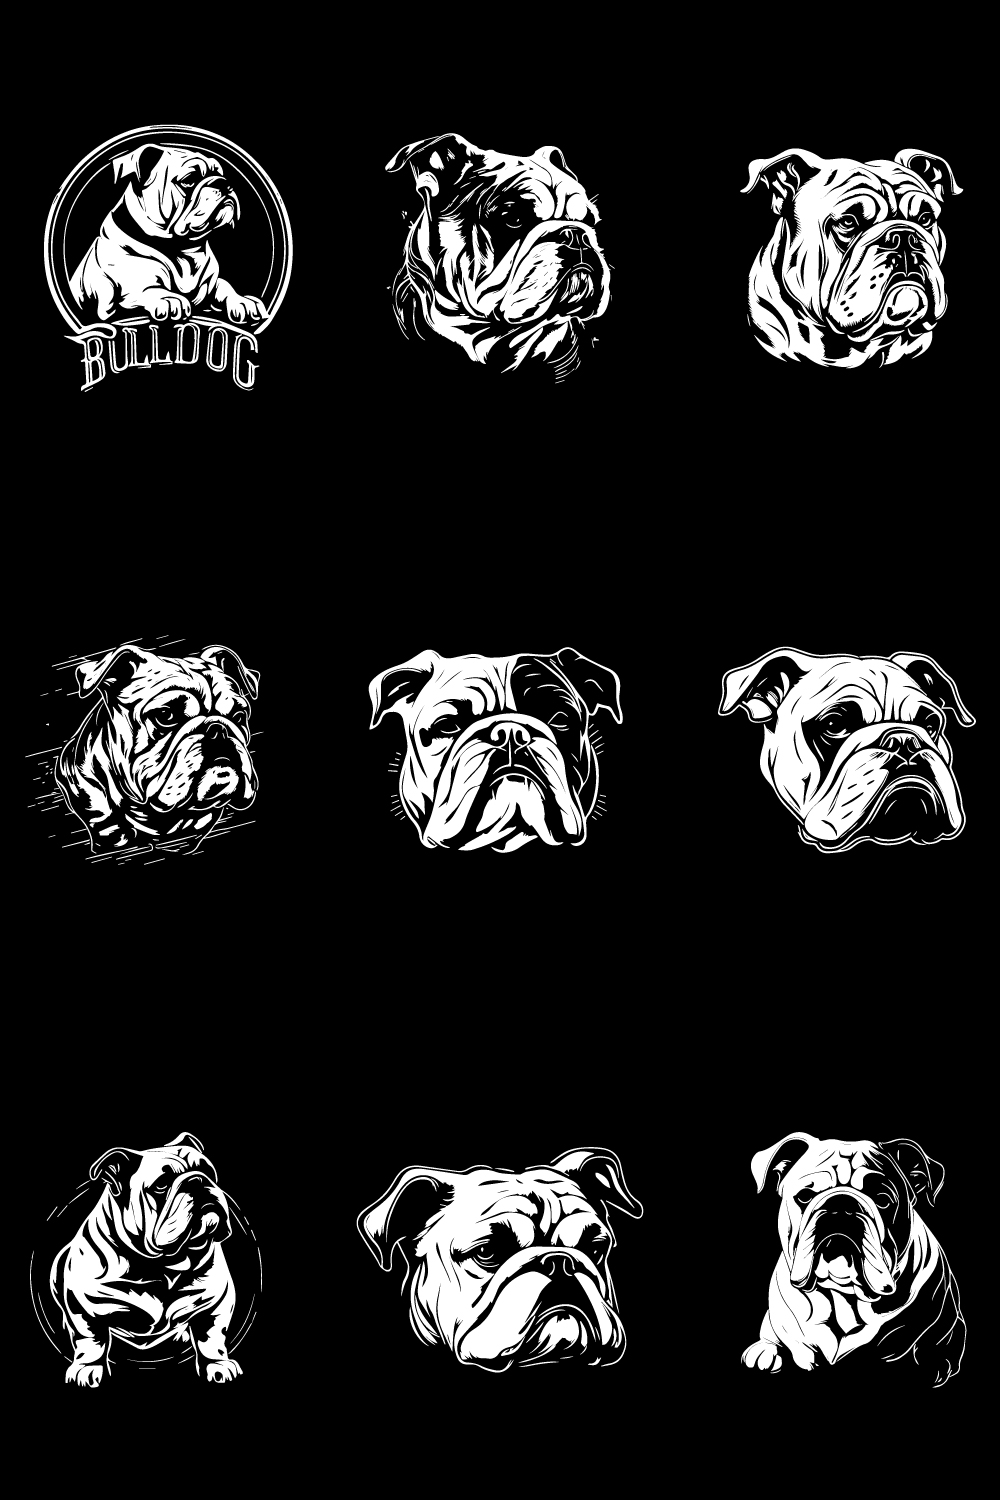 Dog face T-shirt design-vector dog bundle pinterest preview image.